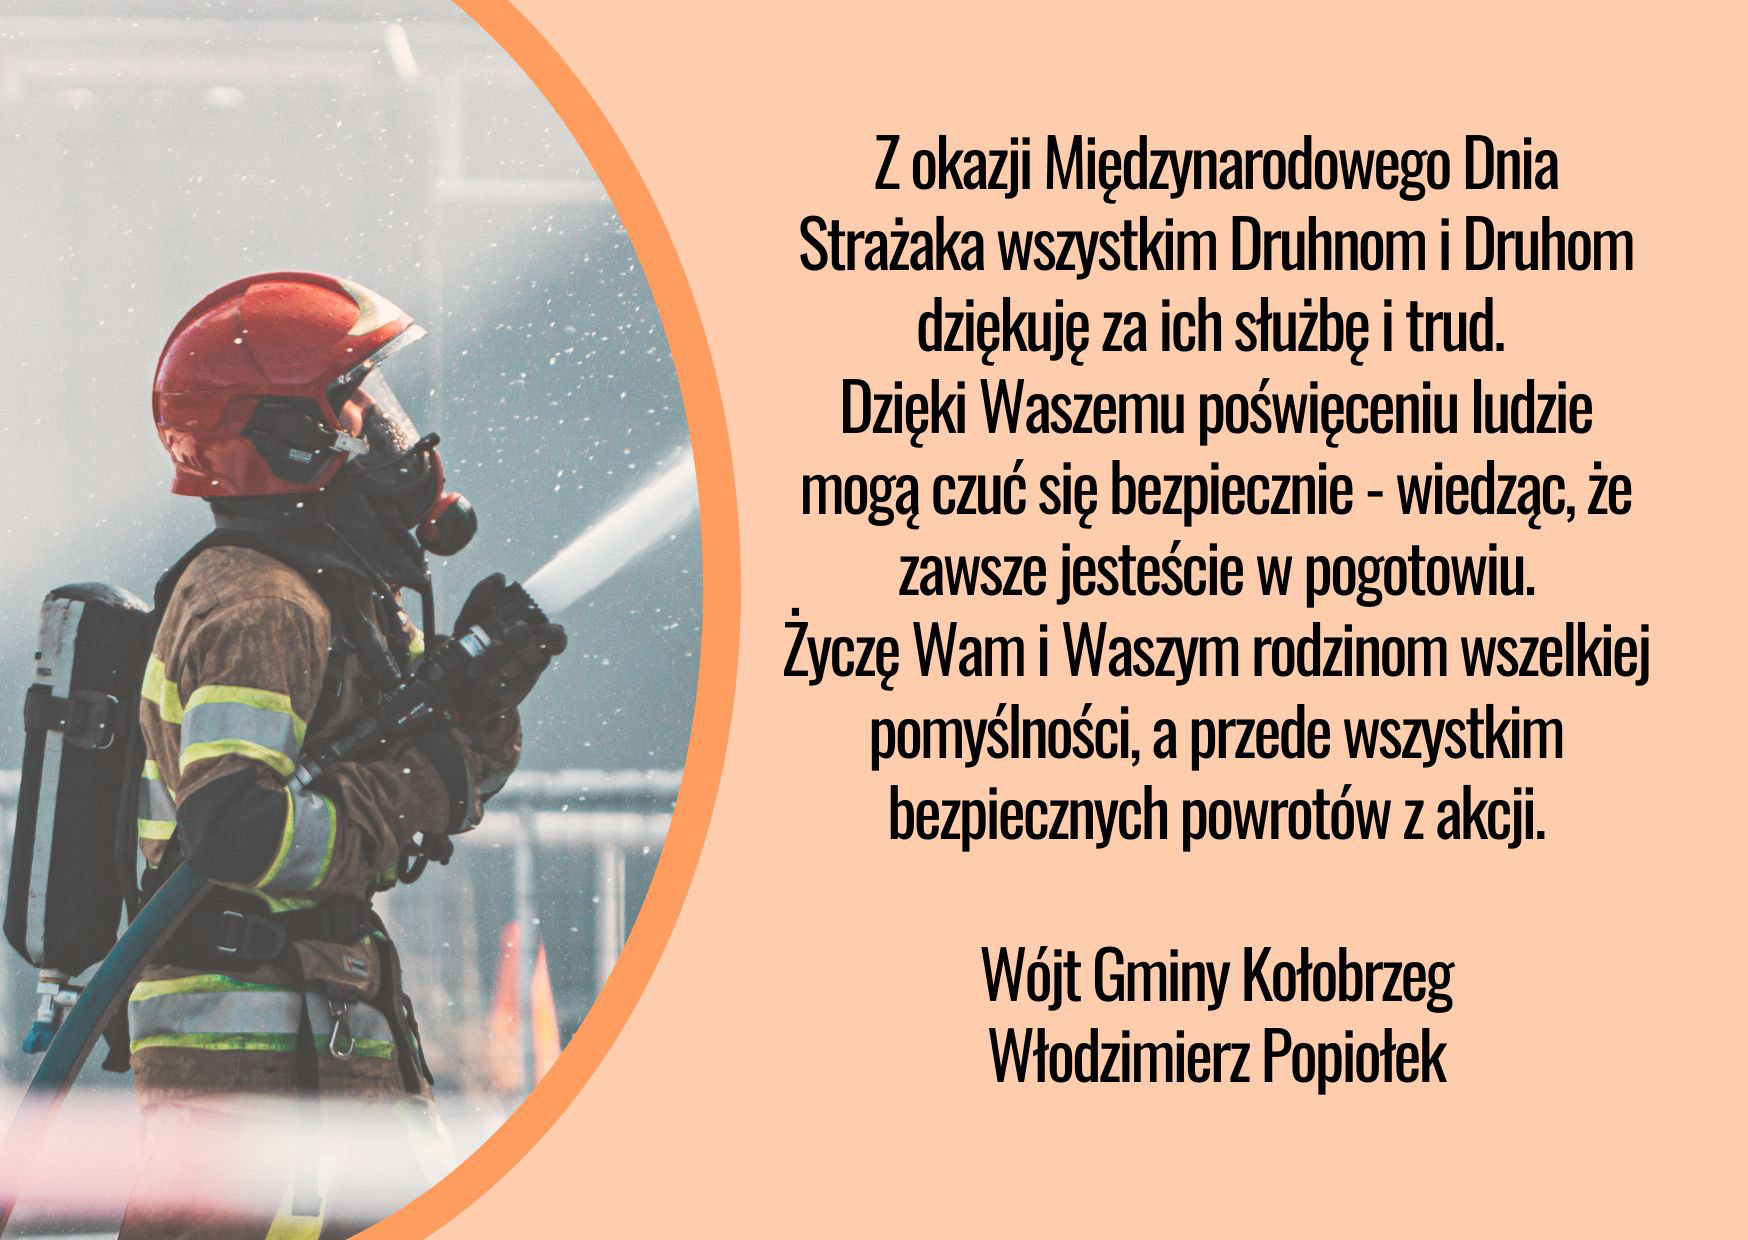 Kartka z okazji Dnia Strażaka, po lewej stronie zdjęcie strażaka z wężem strażackim a po prawej życzenia - tekst poniżej